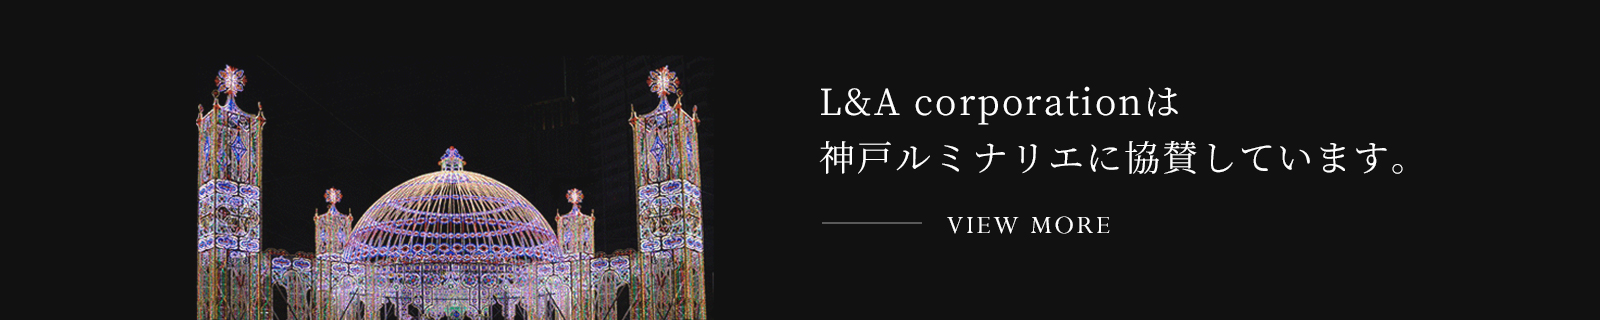 L&A corporationは神戸ルミナリエに協賛しています。